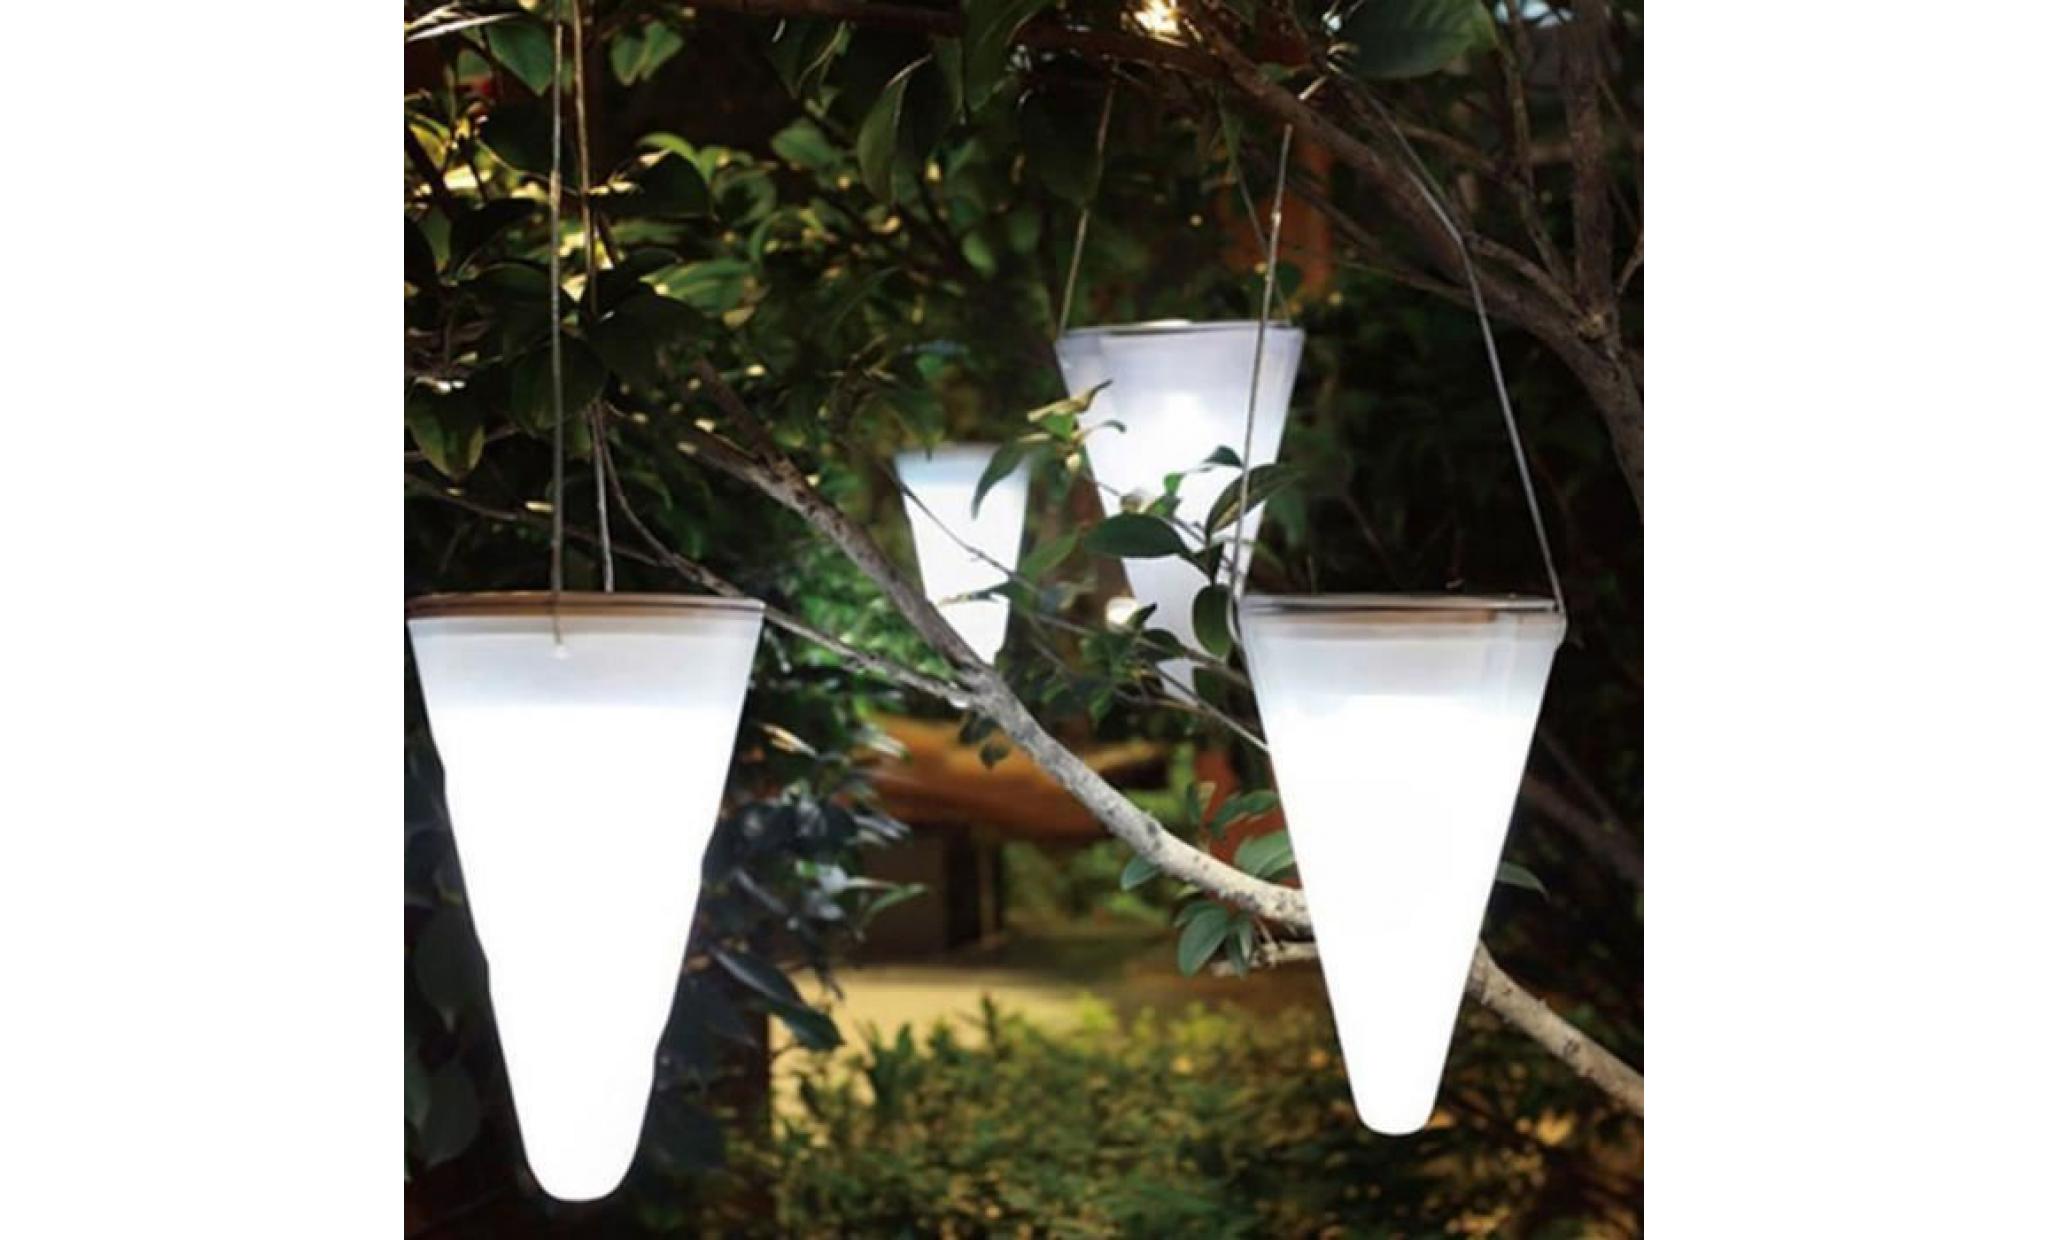 marque nouvelle lumière solaire conique lumière led lumière jardin extérieur cour suspendue lampe jardin pas cher